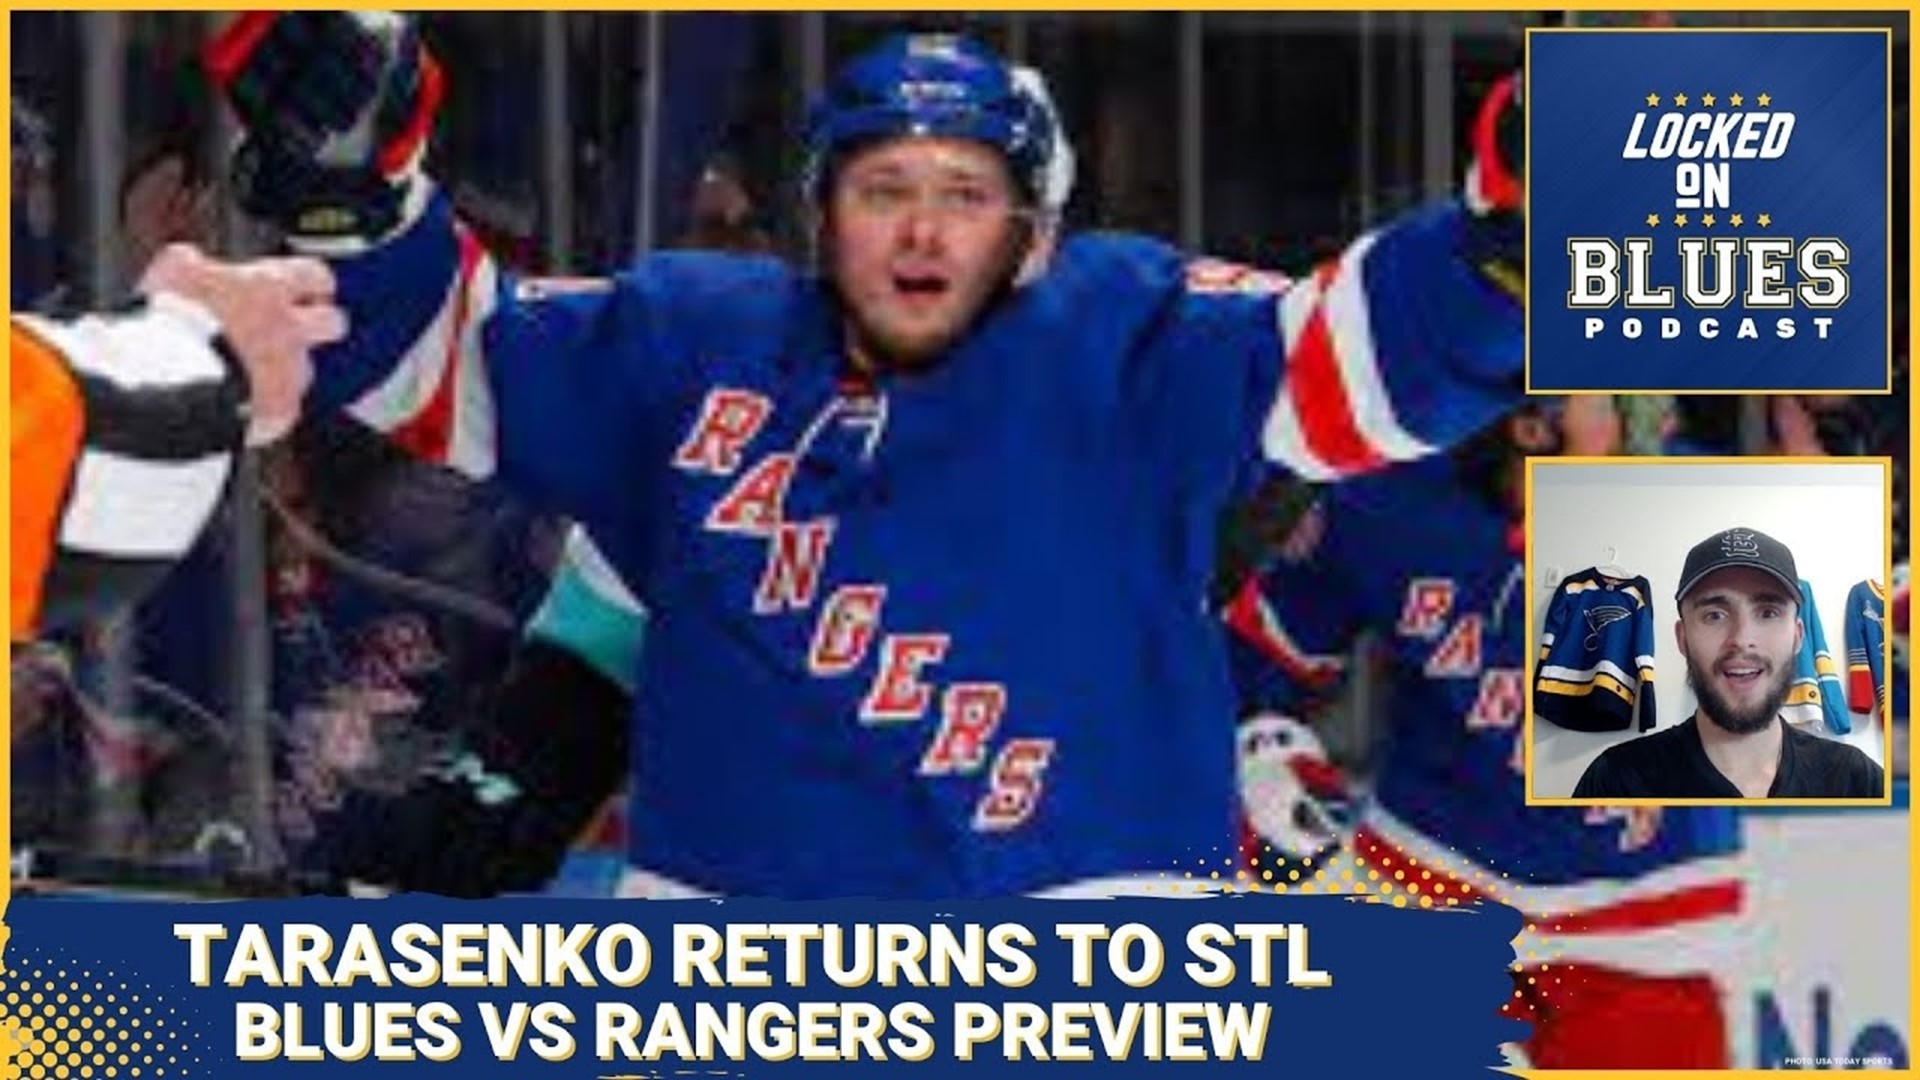 The Return of Vladimir Tarasenko | Blues vs Rangers Preview